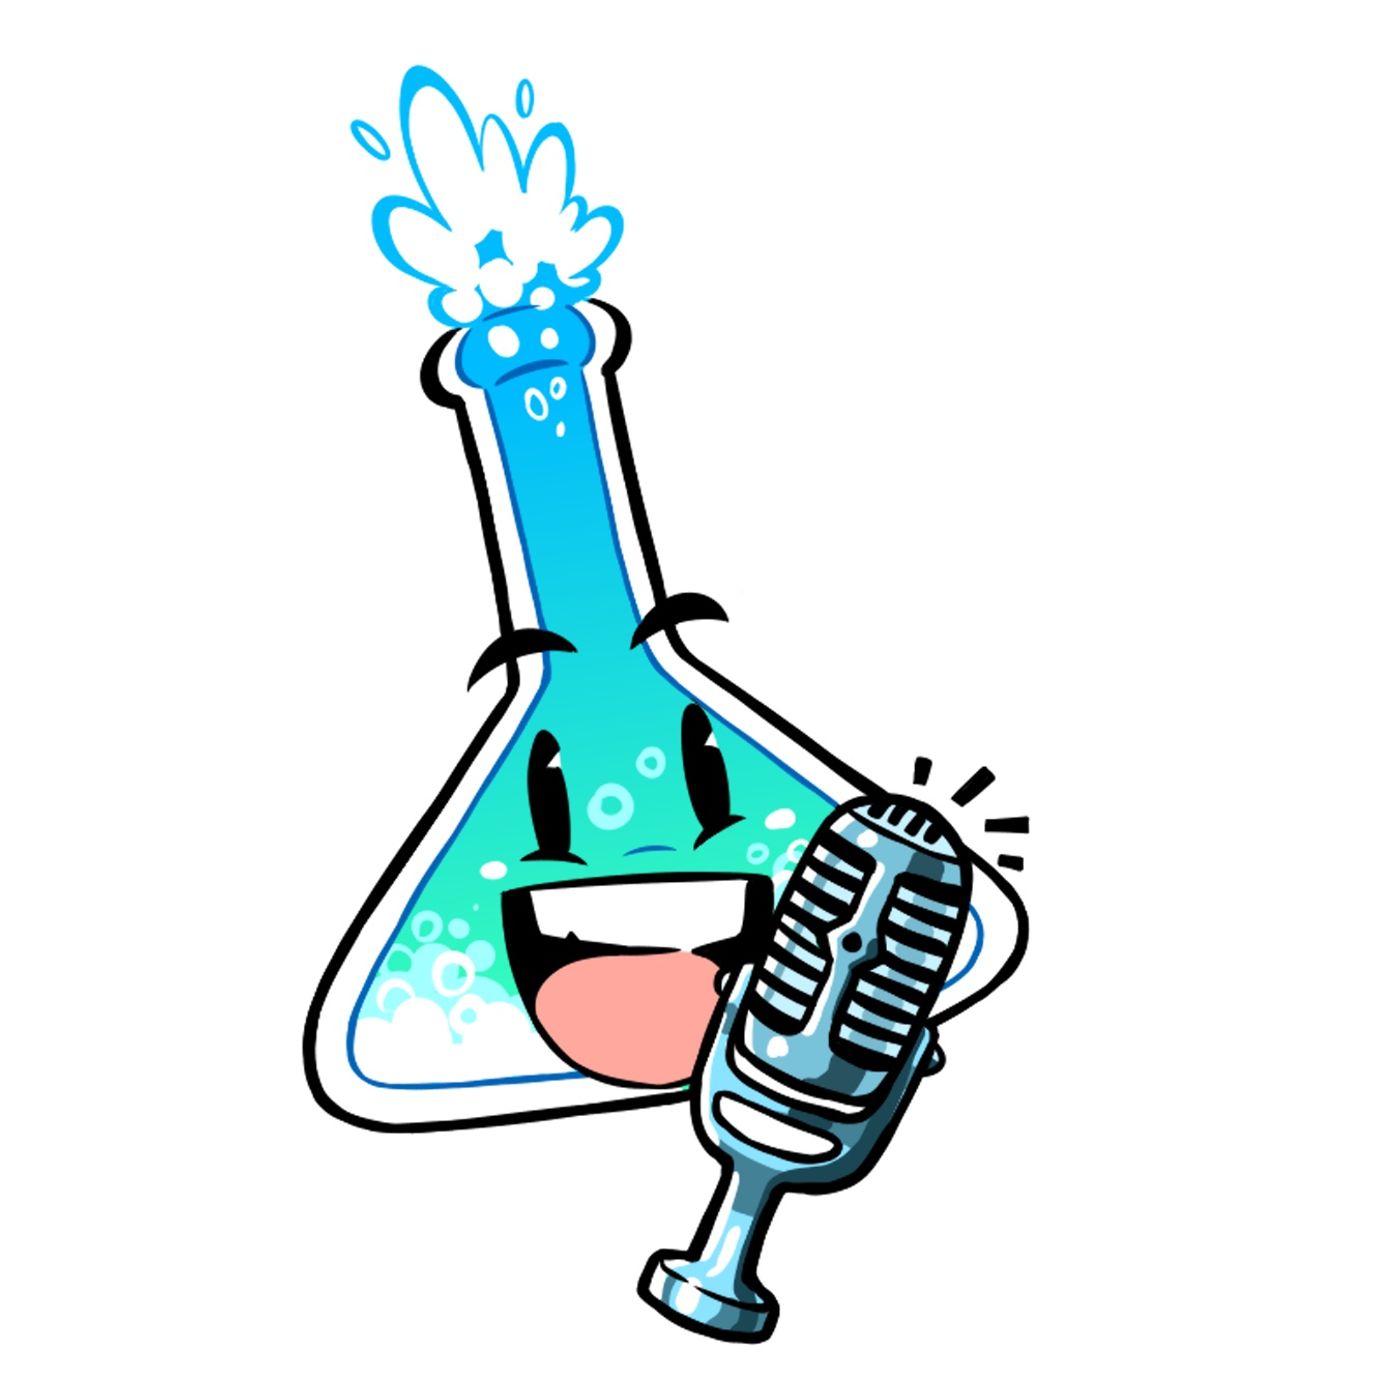 Quimicast - O seu podcast de Química